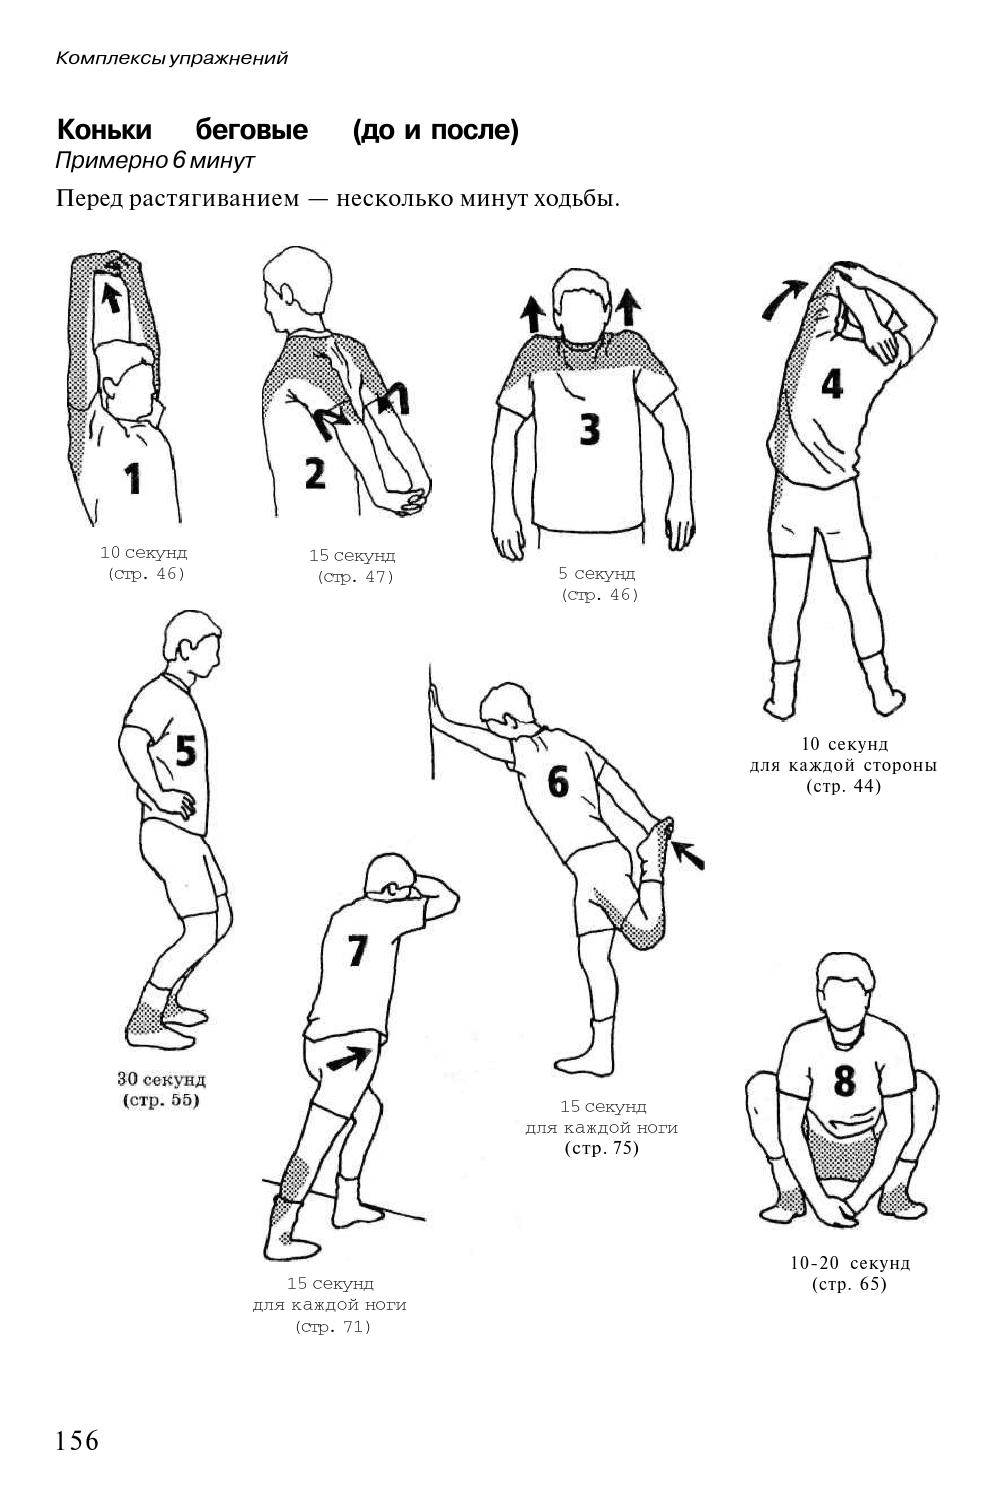 Комплекс упражнений для разминки перед любой тренировкой